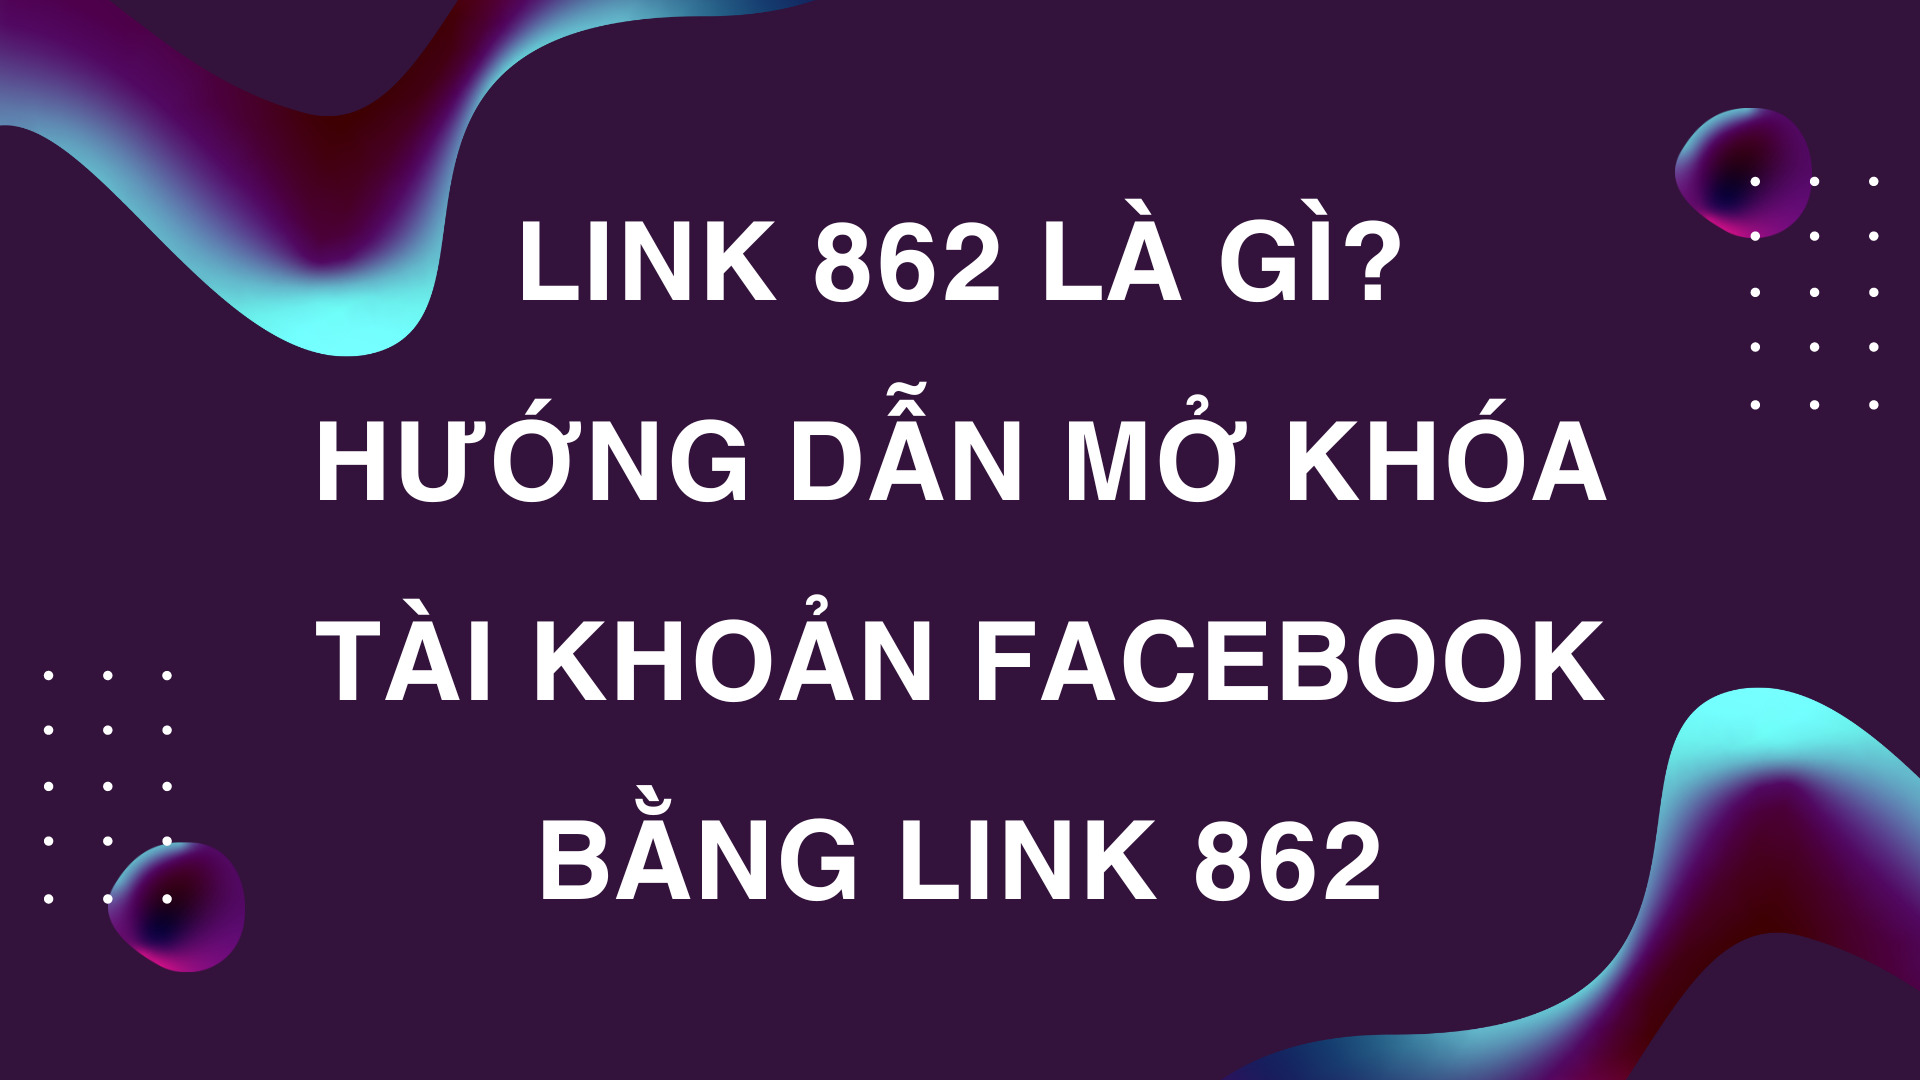 Link 862 là gì? Hướng dẫn mở khóa tài khoản Facebook bằng link 862